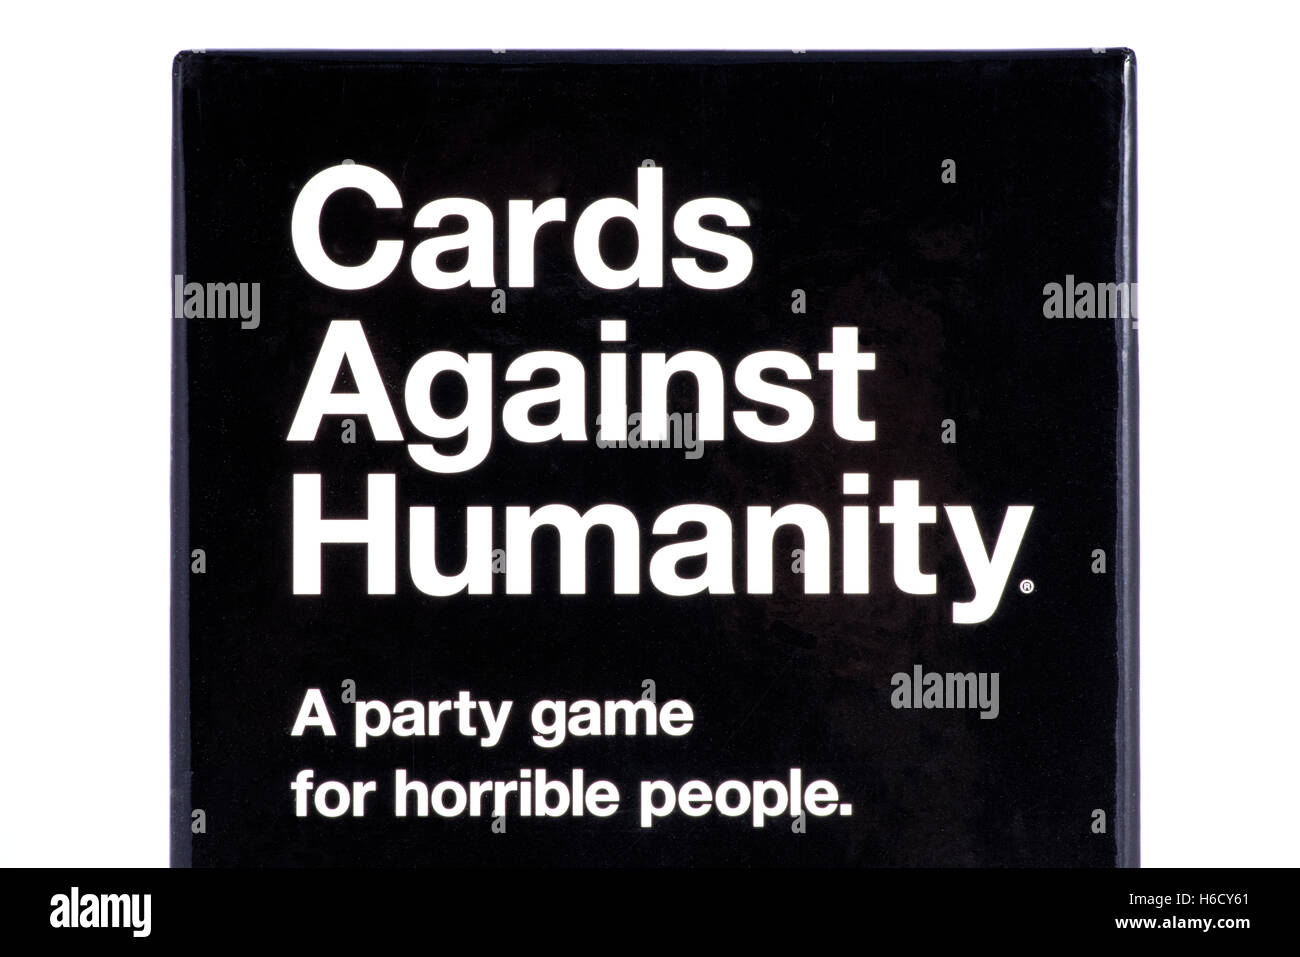 LONDON, UK - 21. Oktober 2016: Eine Nahaufnahme von der Verpackung des Karten gegen die Menschlichkeit-Party-Spiels (UK Edition). Stockfoto